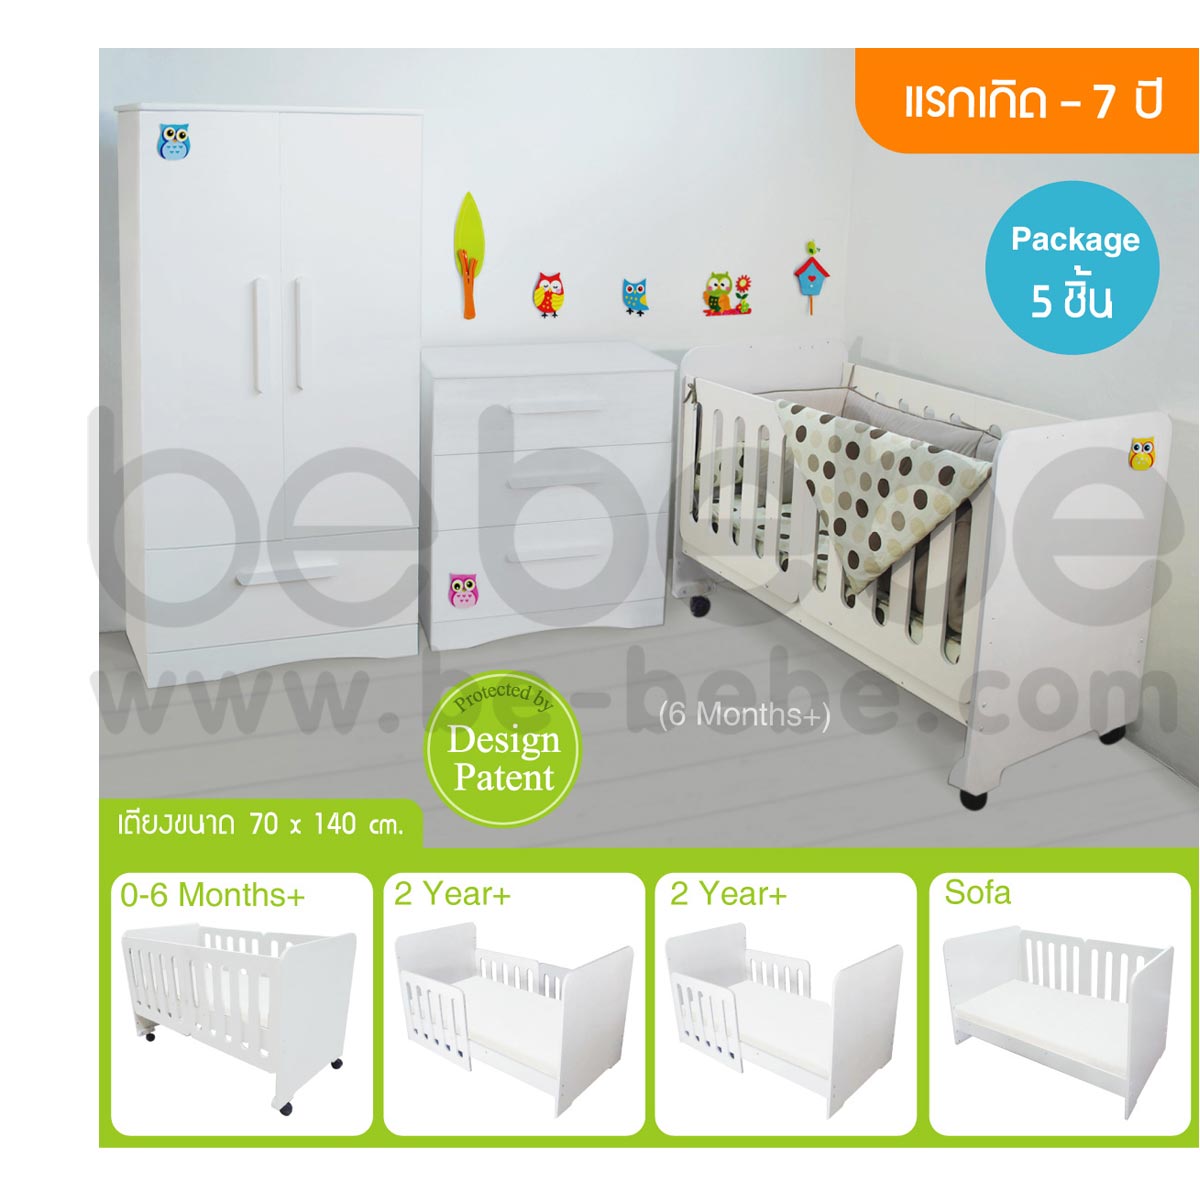 be bebe :ชุดเตียงเด็กแรกเกิด-7ปี (70x140)ปรับเป็นโซฟาได้+ที่นอนฟองน้ำ+ชุดเครื่องนอน+ตู้เสื้อผ้า+ตู้เตี้ย /ขาว